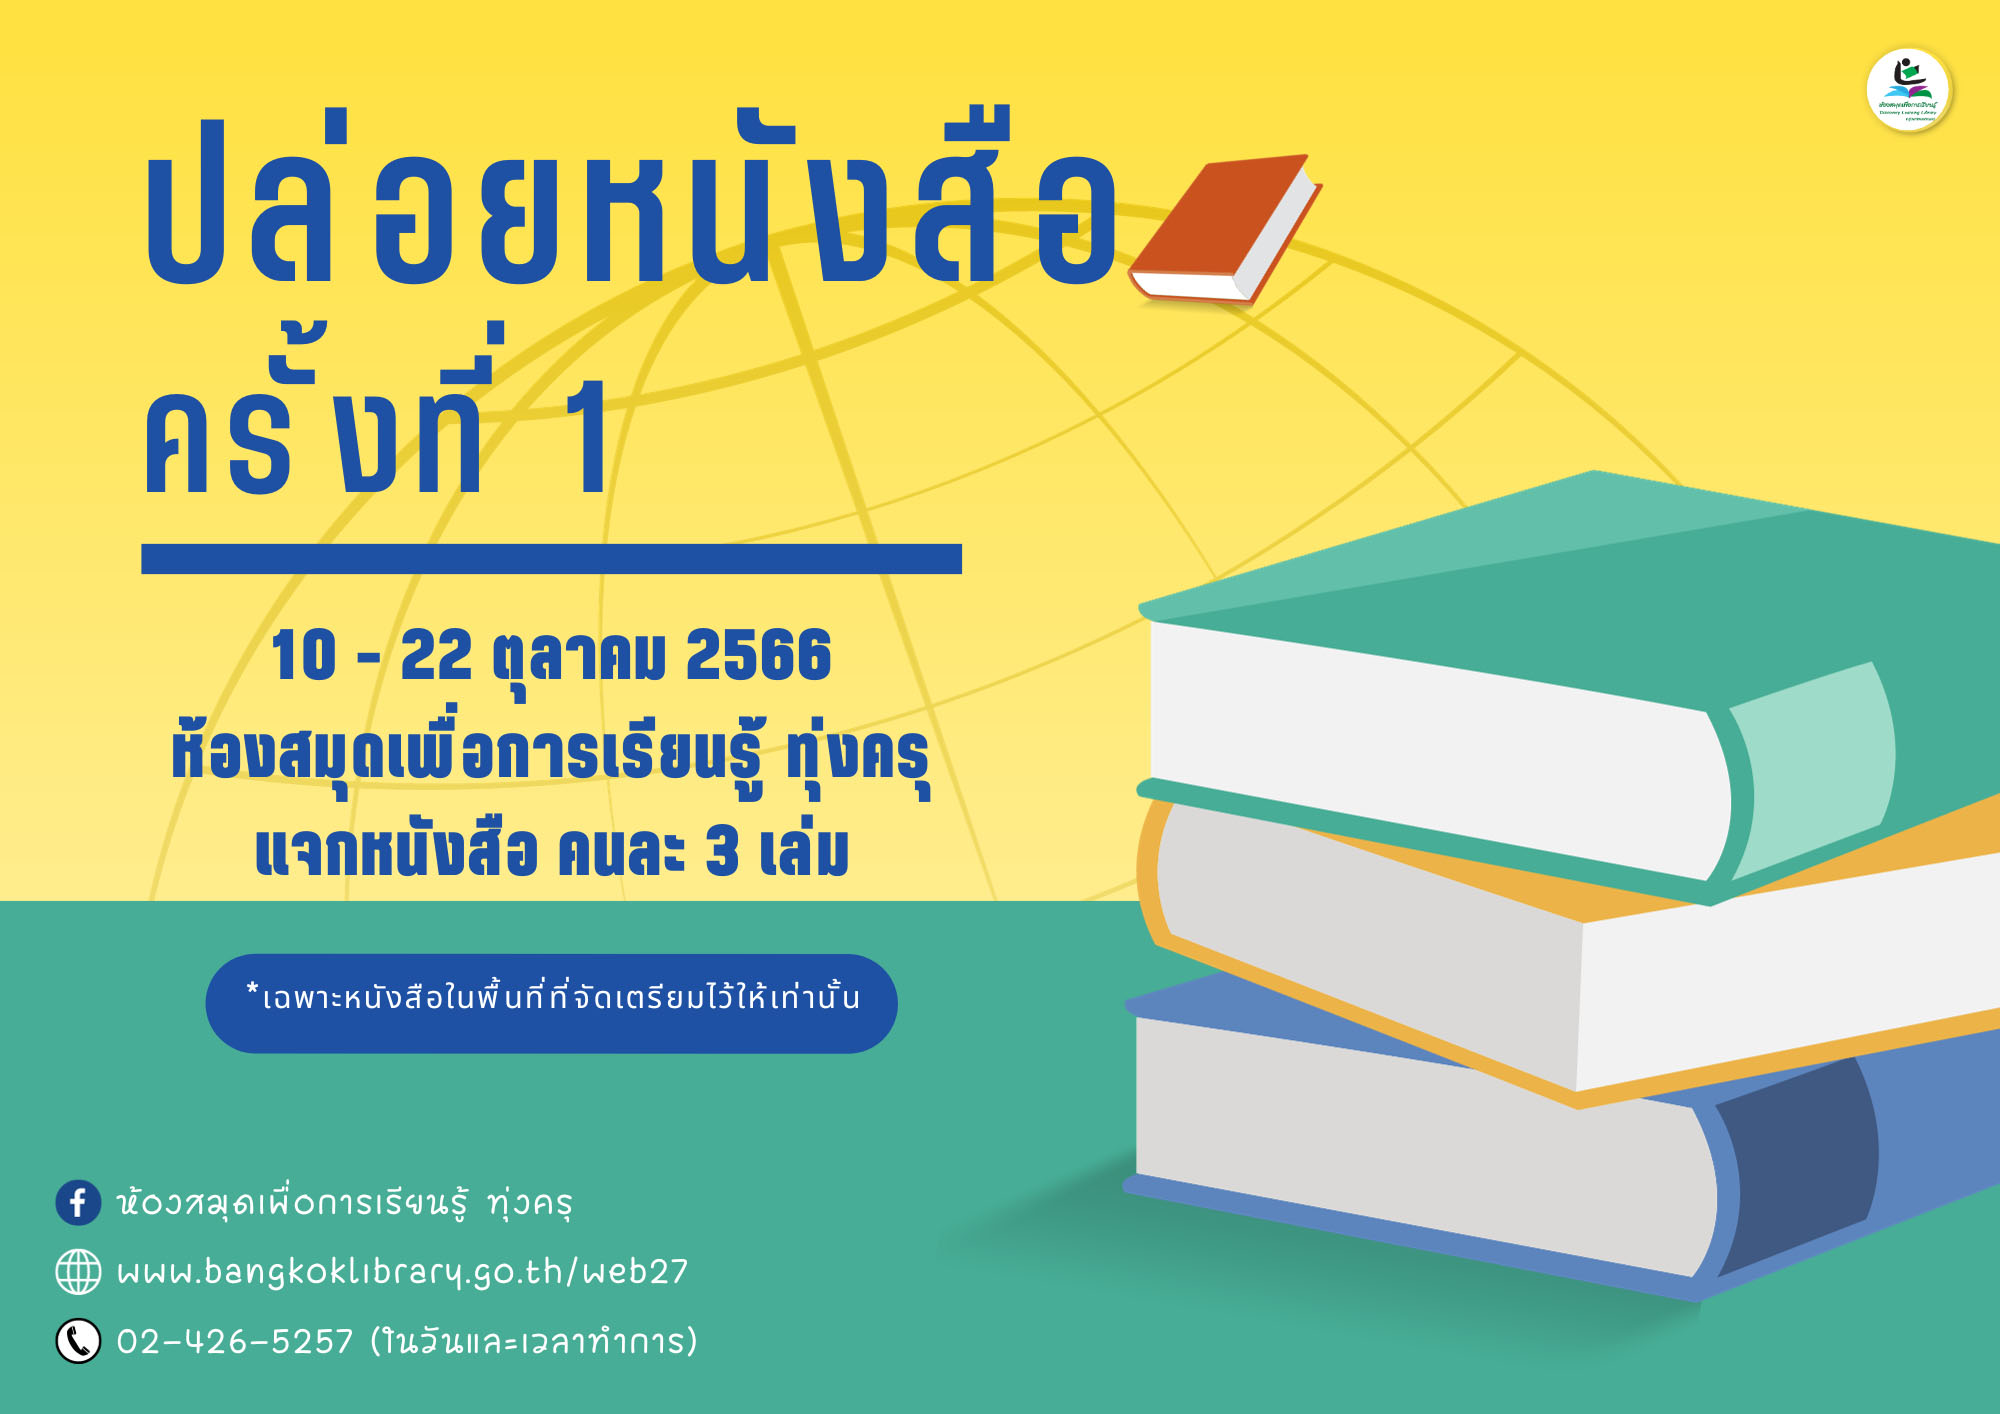 วันอังคาร ที่ 10 - วันอาทิตย์ ที่ 22 ตุลาคม 2566 ห้องสมุดเพื่อการเรียนรู้ ทุ่งครุ ปล่อยหนังสือ ครั้งที่ 1